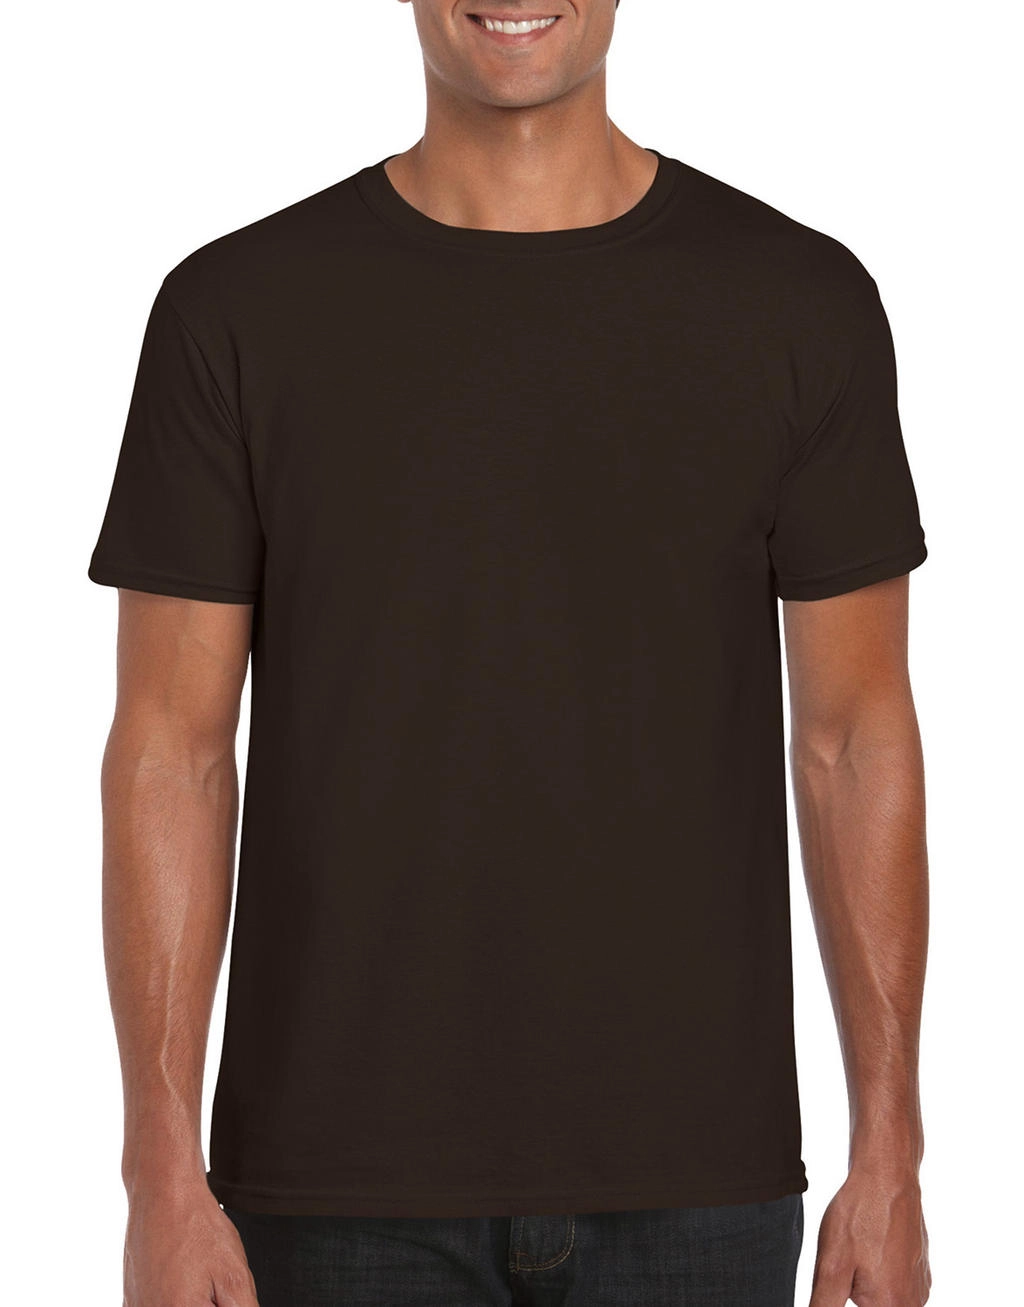 Softstyle® Ring Spun T-Shirt zum Besticken und Bedrucken in der Farbe Dark Chocolate mit Ihren Logo, Schriftzug oder Motiv.